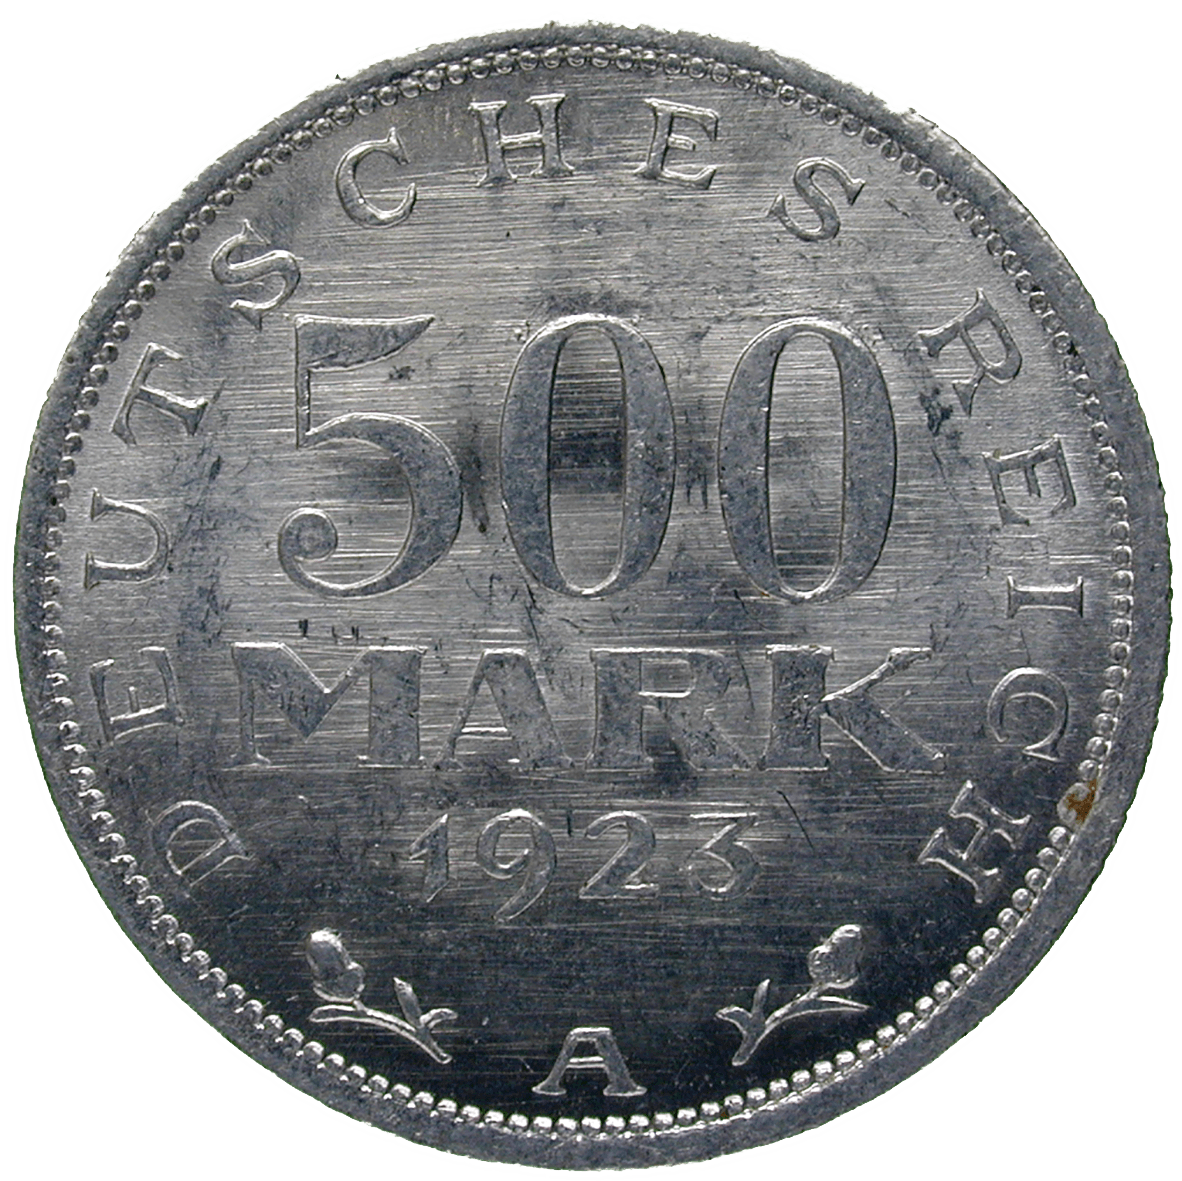 German Empire, Weimar Republic, 500 Mark 1923 (obverse)